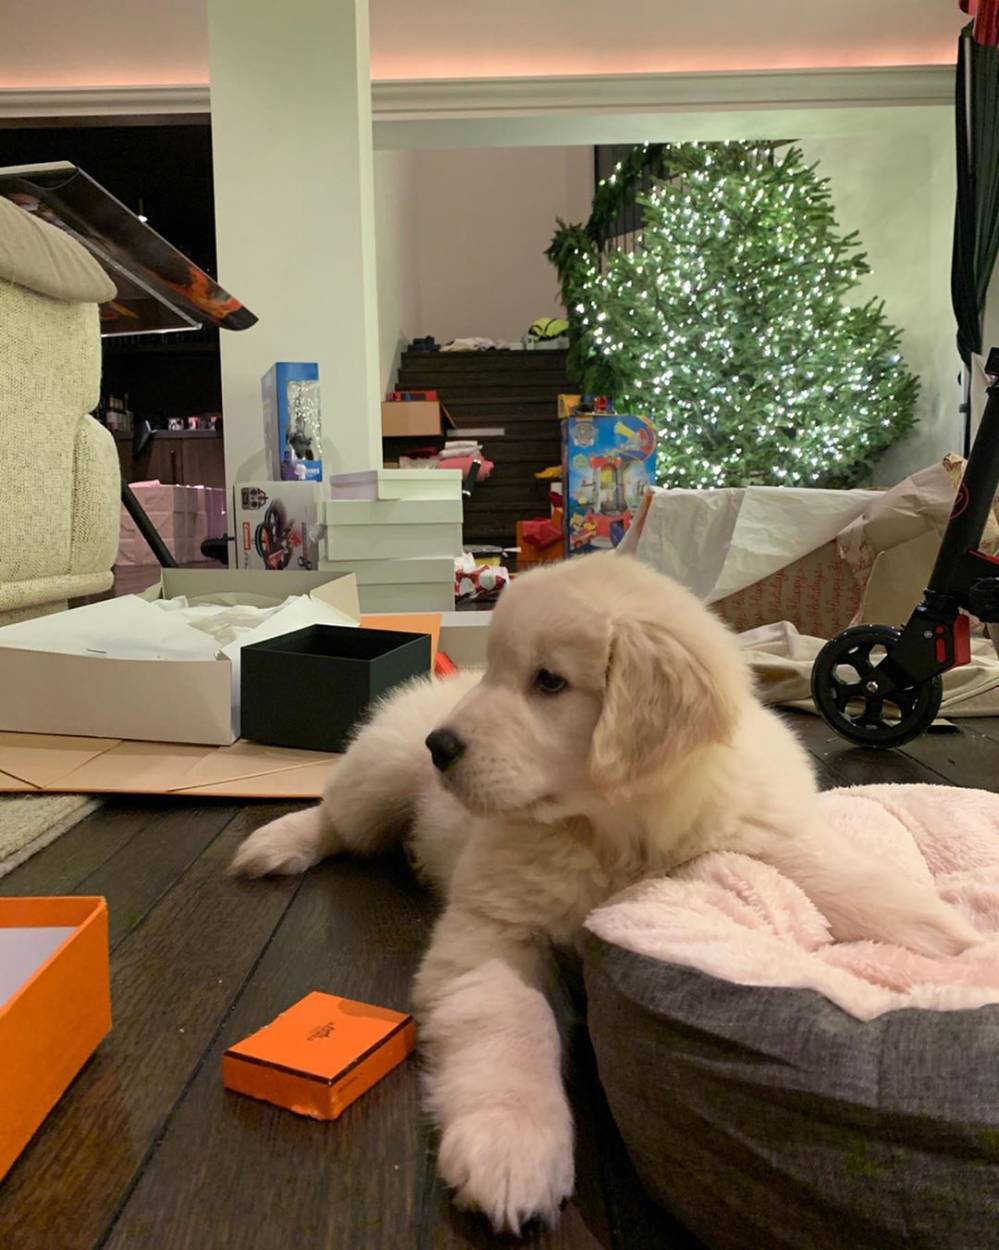 Kourtney Kardashian Got a New Puppy for Christmas